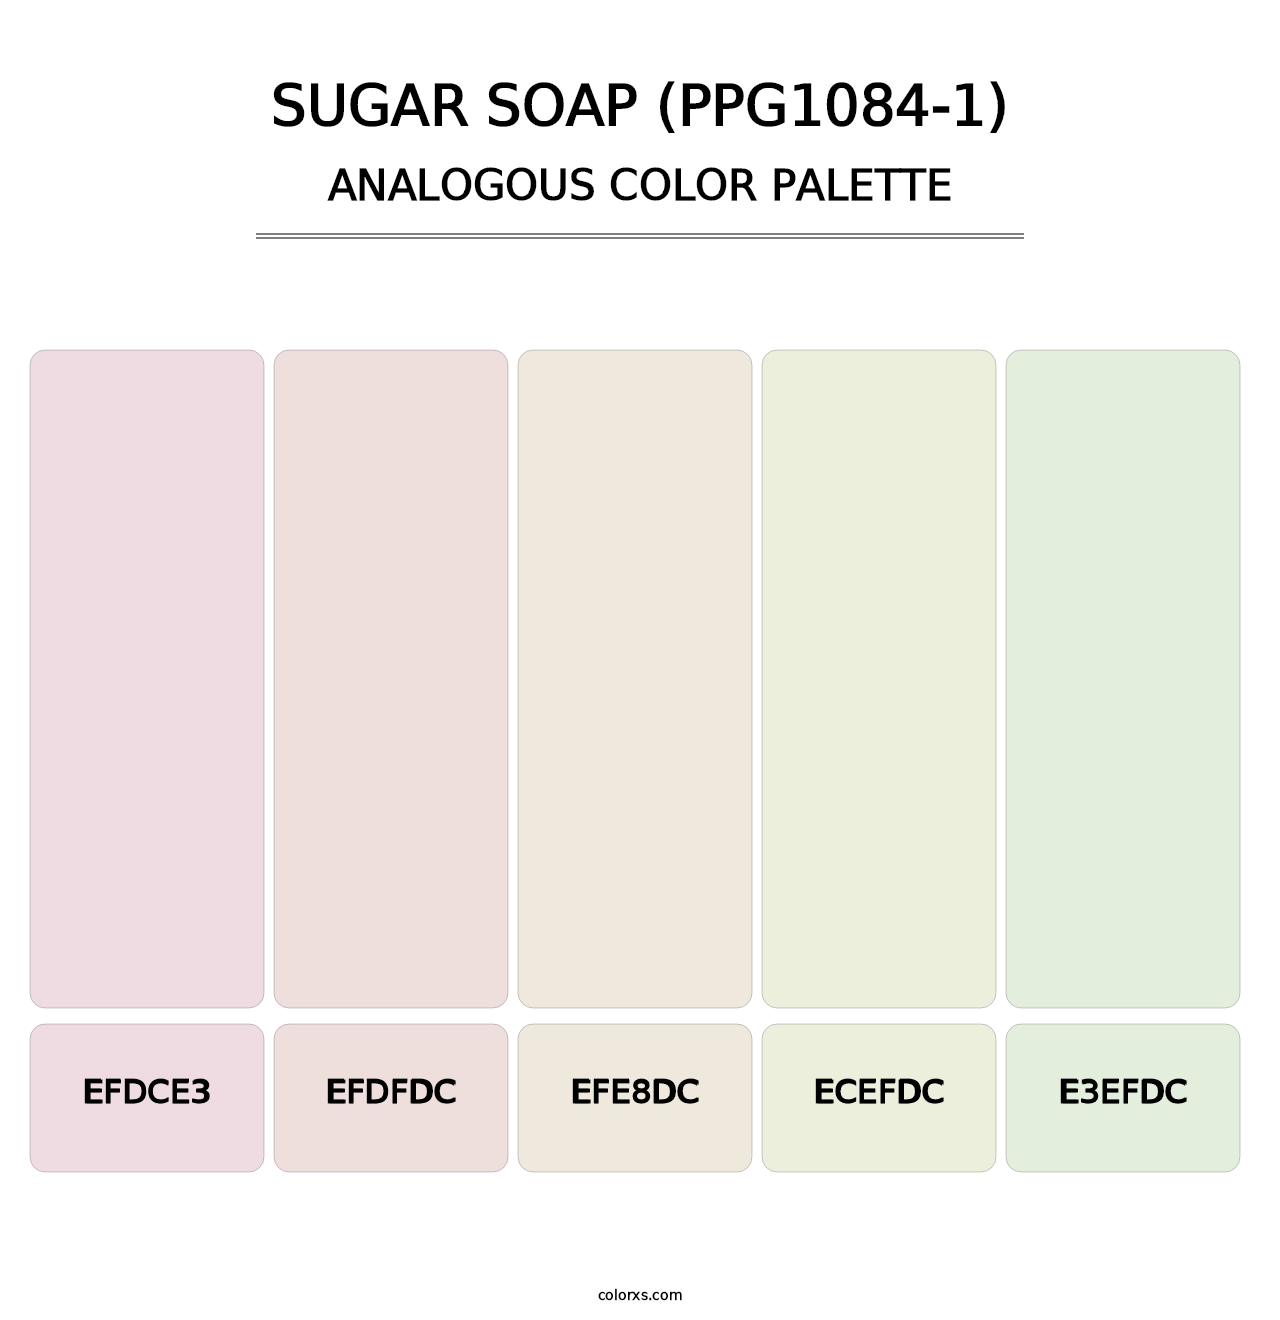 Sugar Soap (PPG1084-1) - Analogous Color Palette